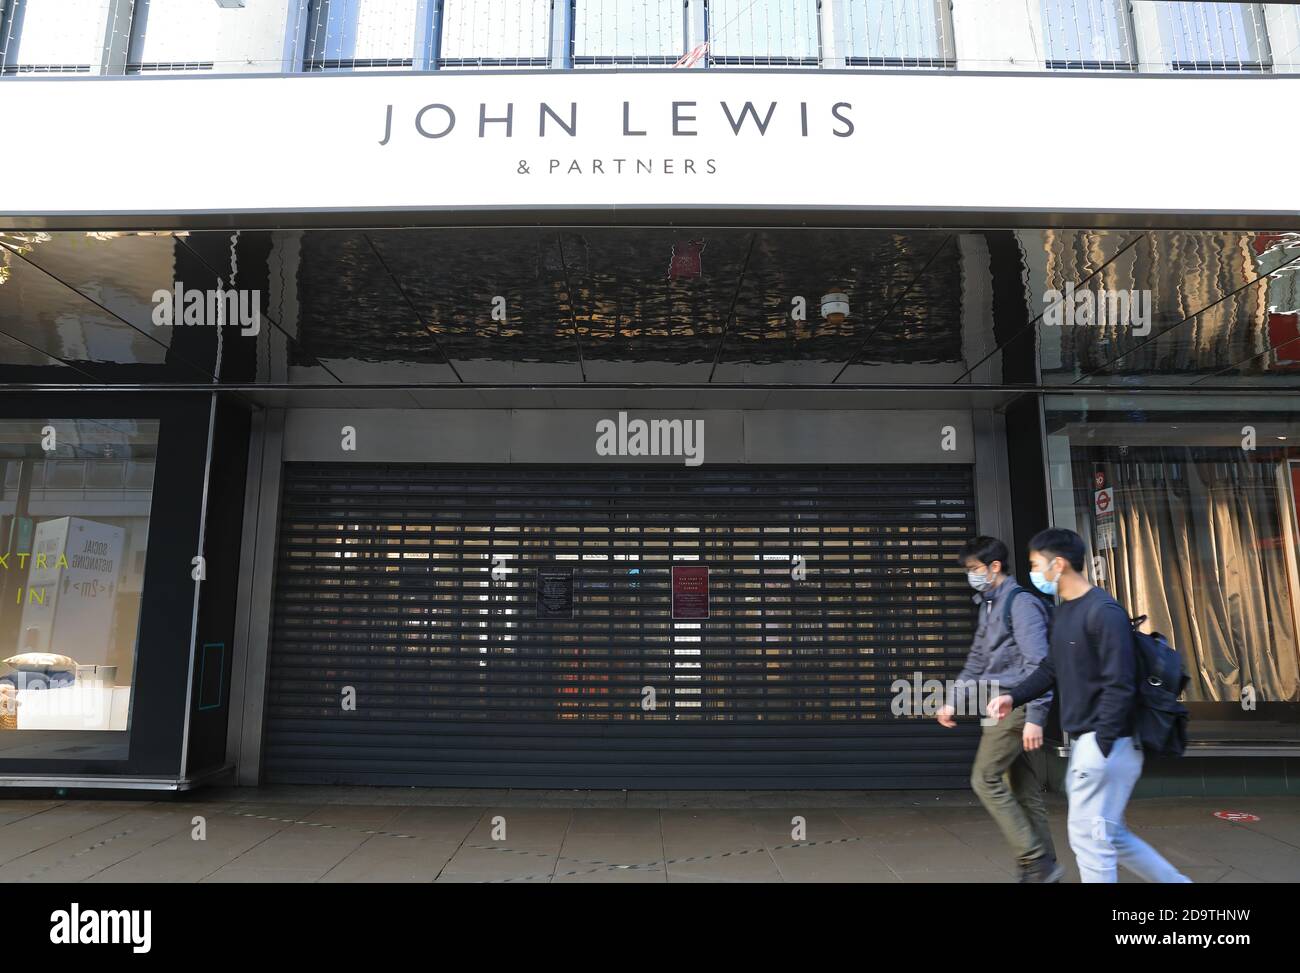 I negozi chiusi su Oxford Street nella seconda lockdown nazionale in Inghilterra per il coronavirus, nel novembre 2020, Regno Unito Foto Stock